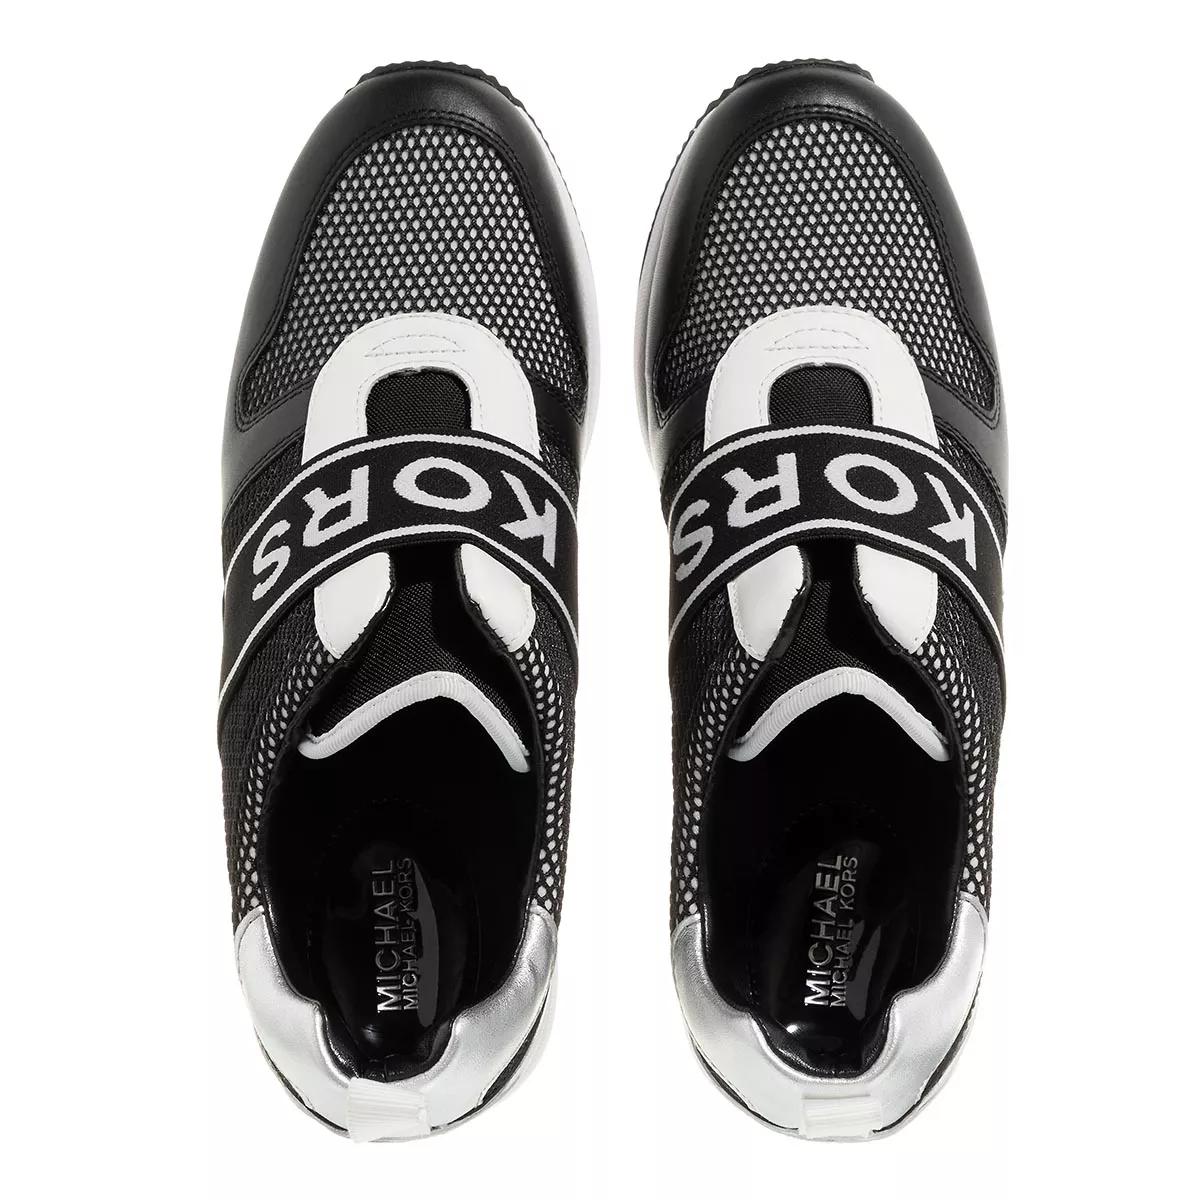 Michael Kors Maven Slip On Trainer Black/Optic White | Low-Top Sneaker